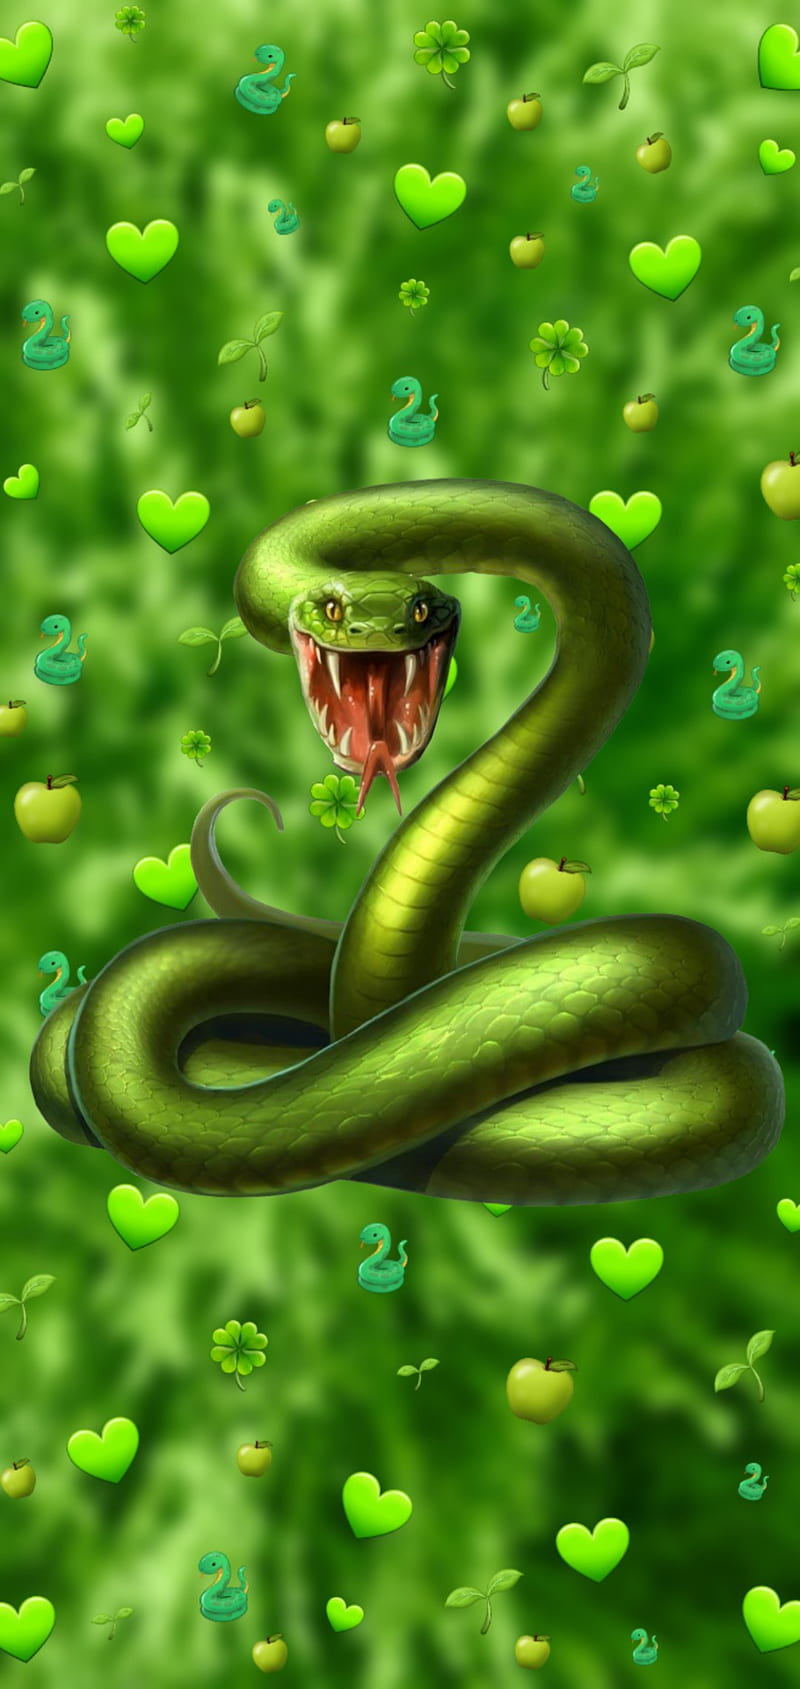 serpent, snake, snakes